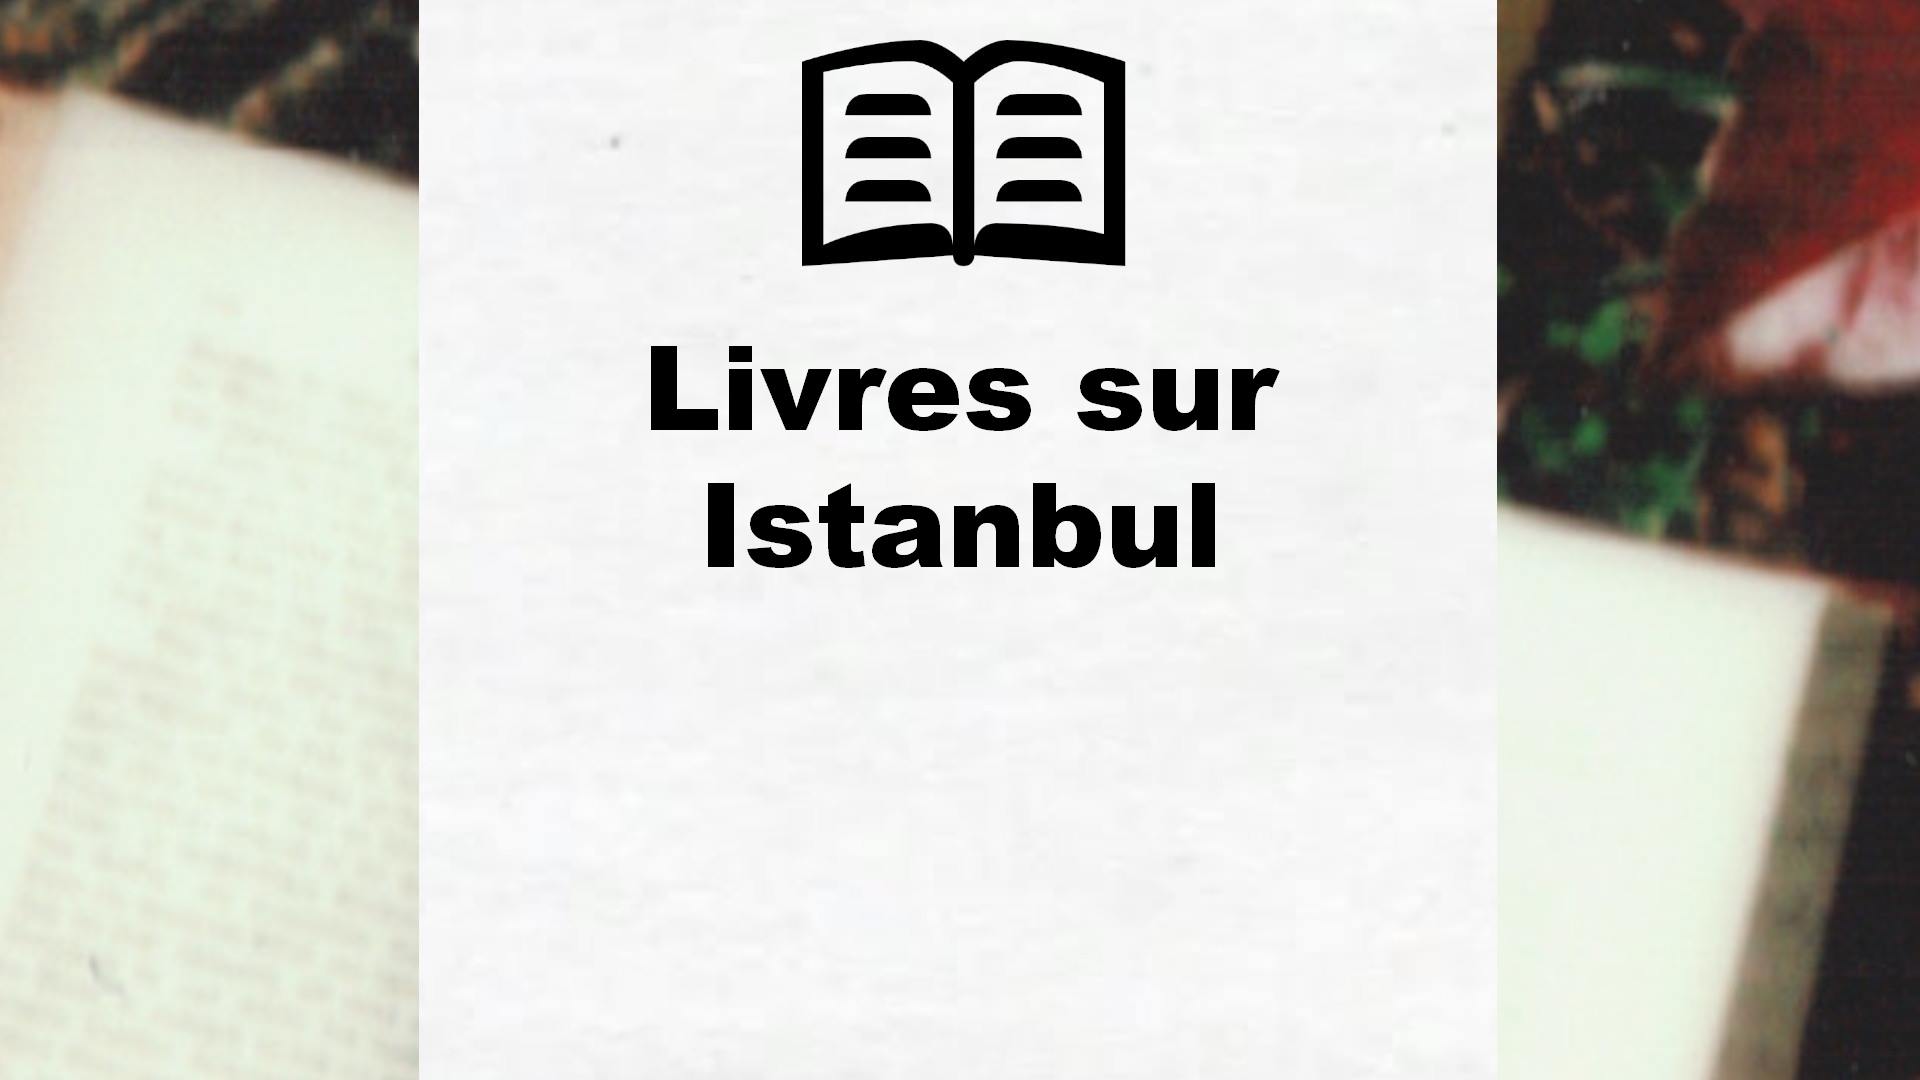 Livres sur Istanbul